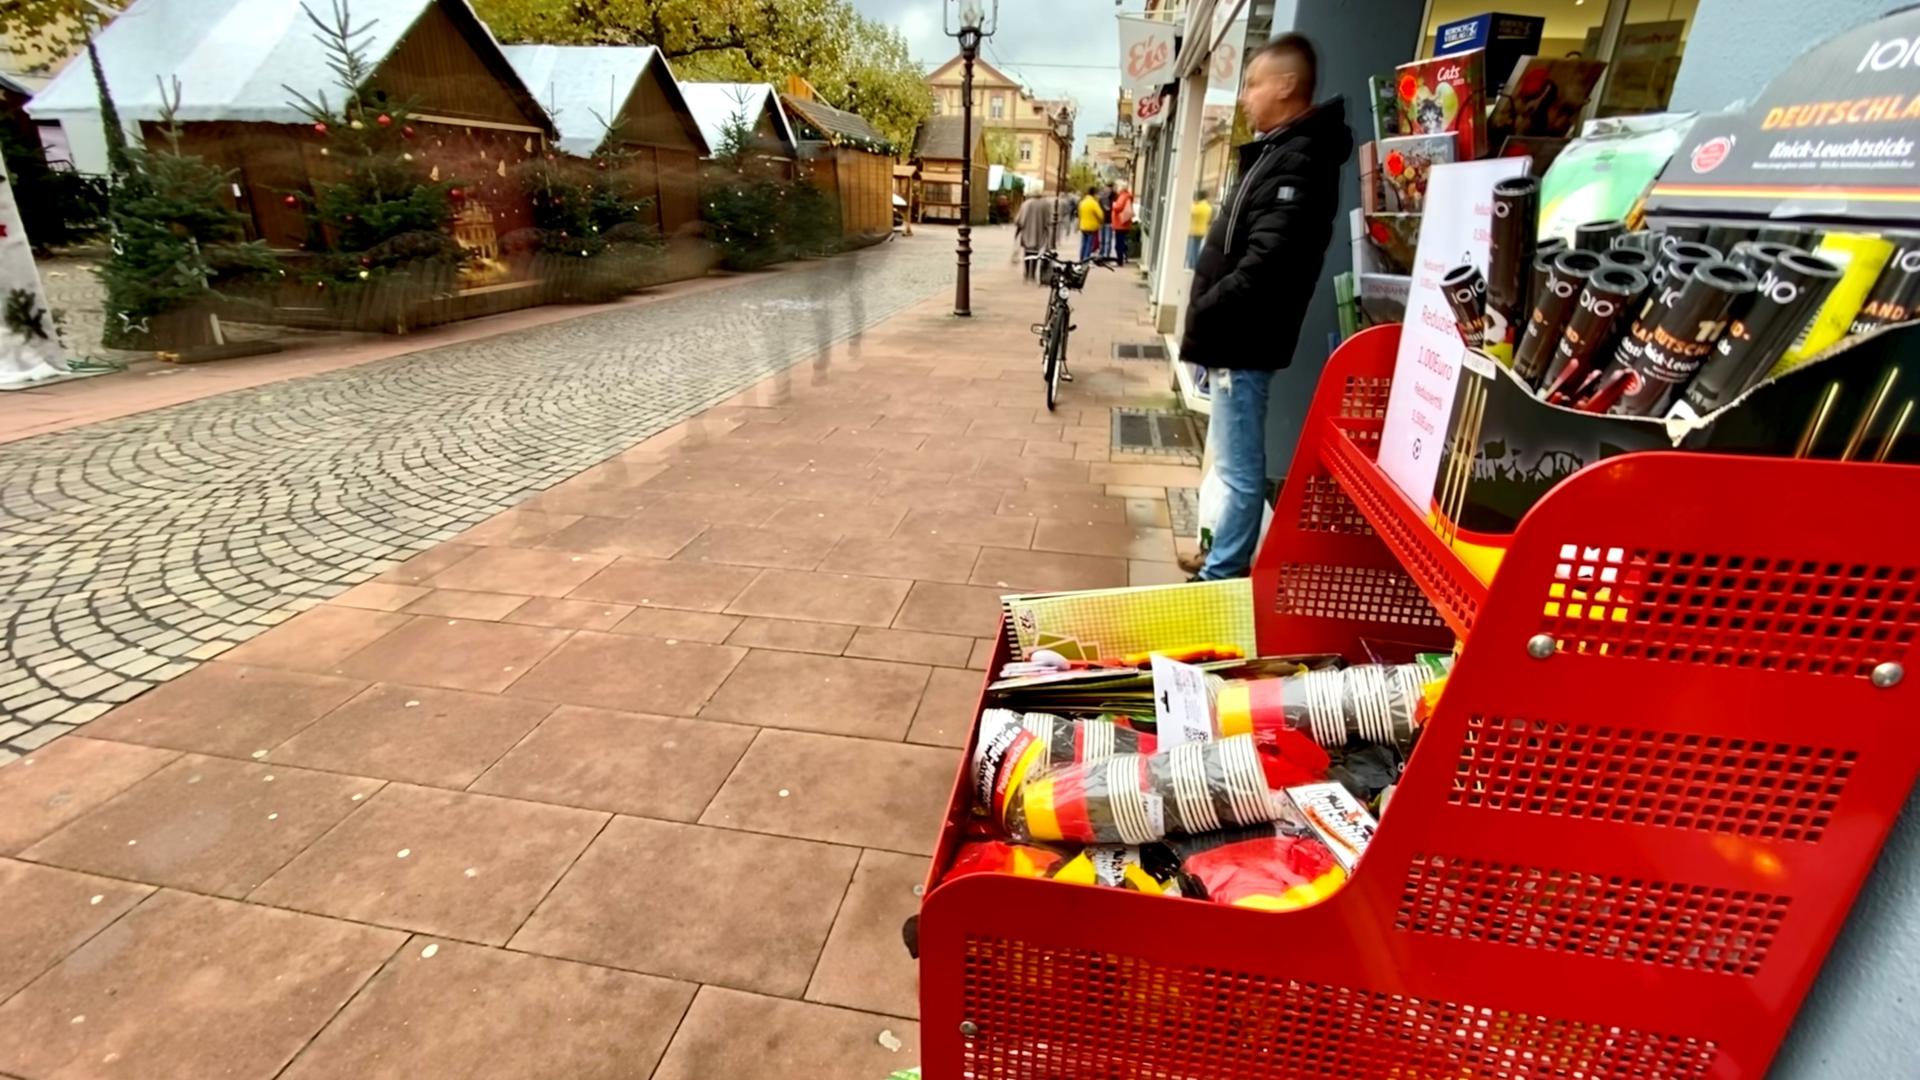 Einsames Dasein: Vor einem Geschäft in Rastatt steht ein Ständer mit WM-Artikel. Viele Einzelhändler bieten in Rastatt keine Fan-Artikel an. Die WM spielt im Straßenbild bislang kaum eine Rolle. 